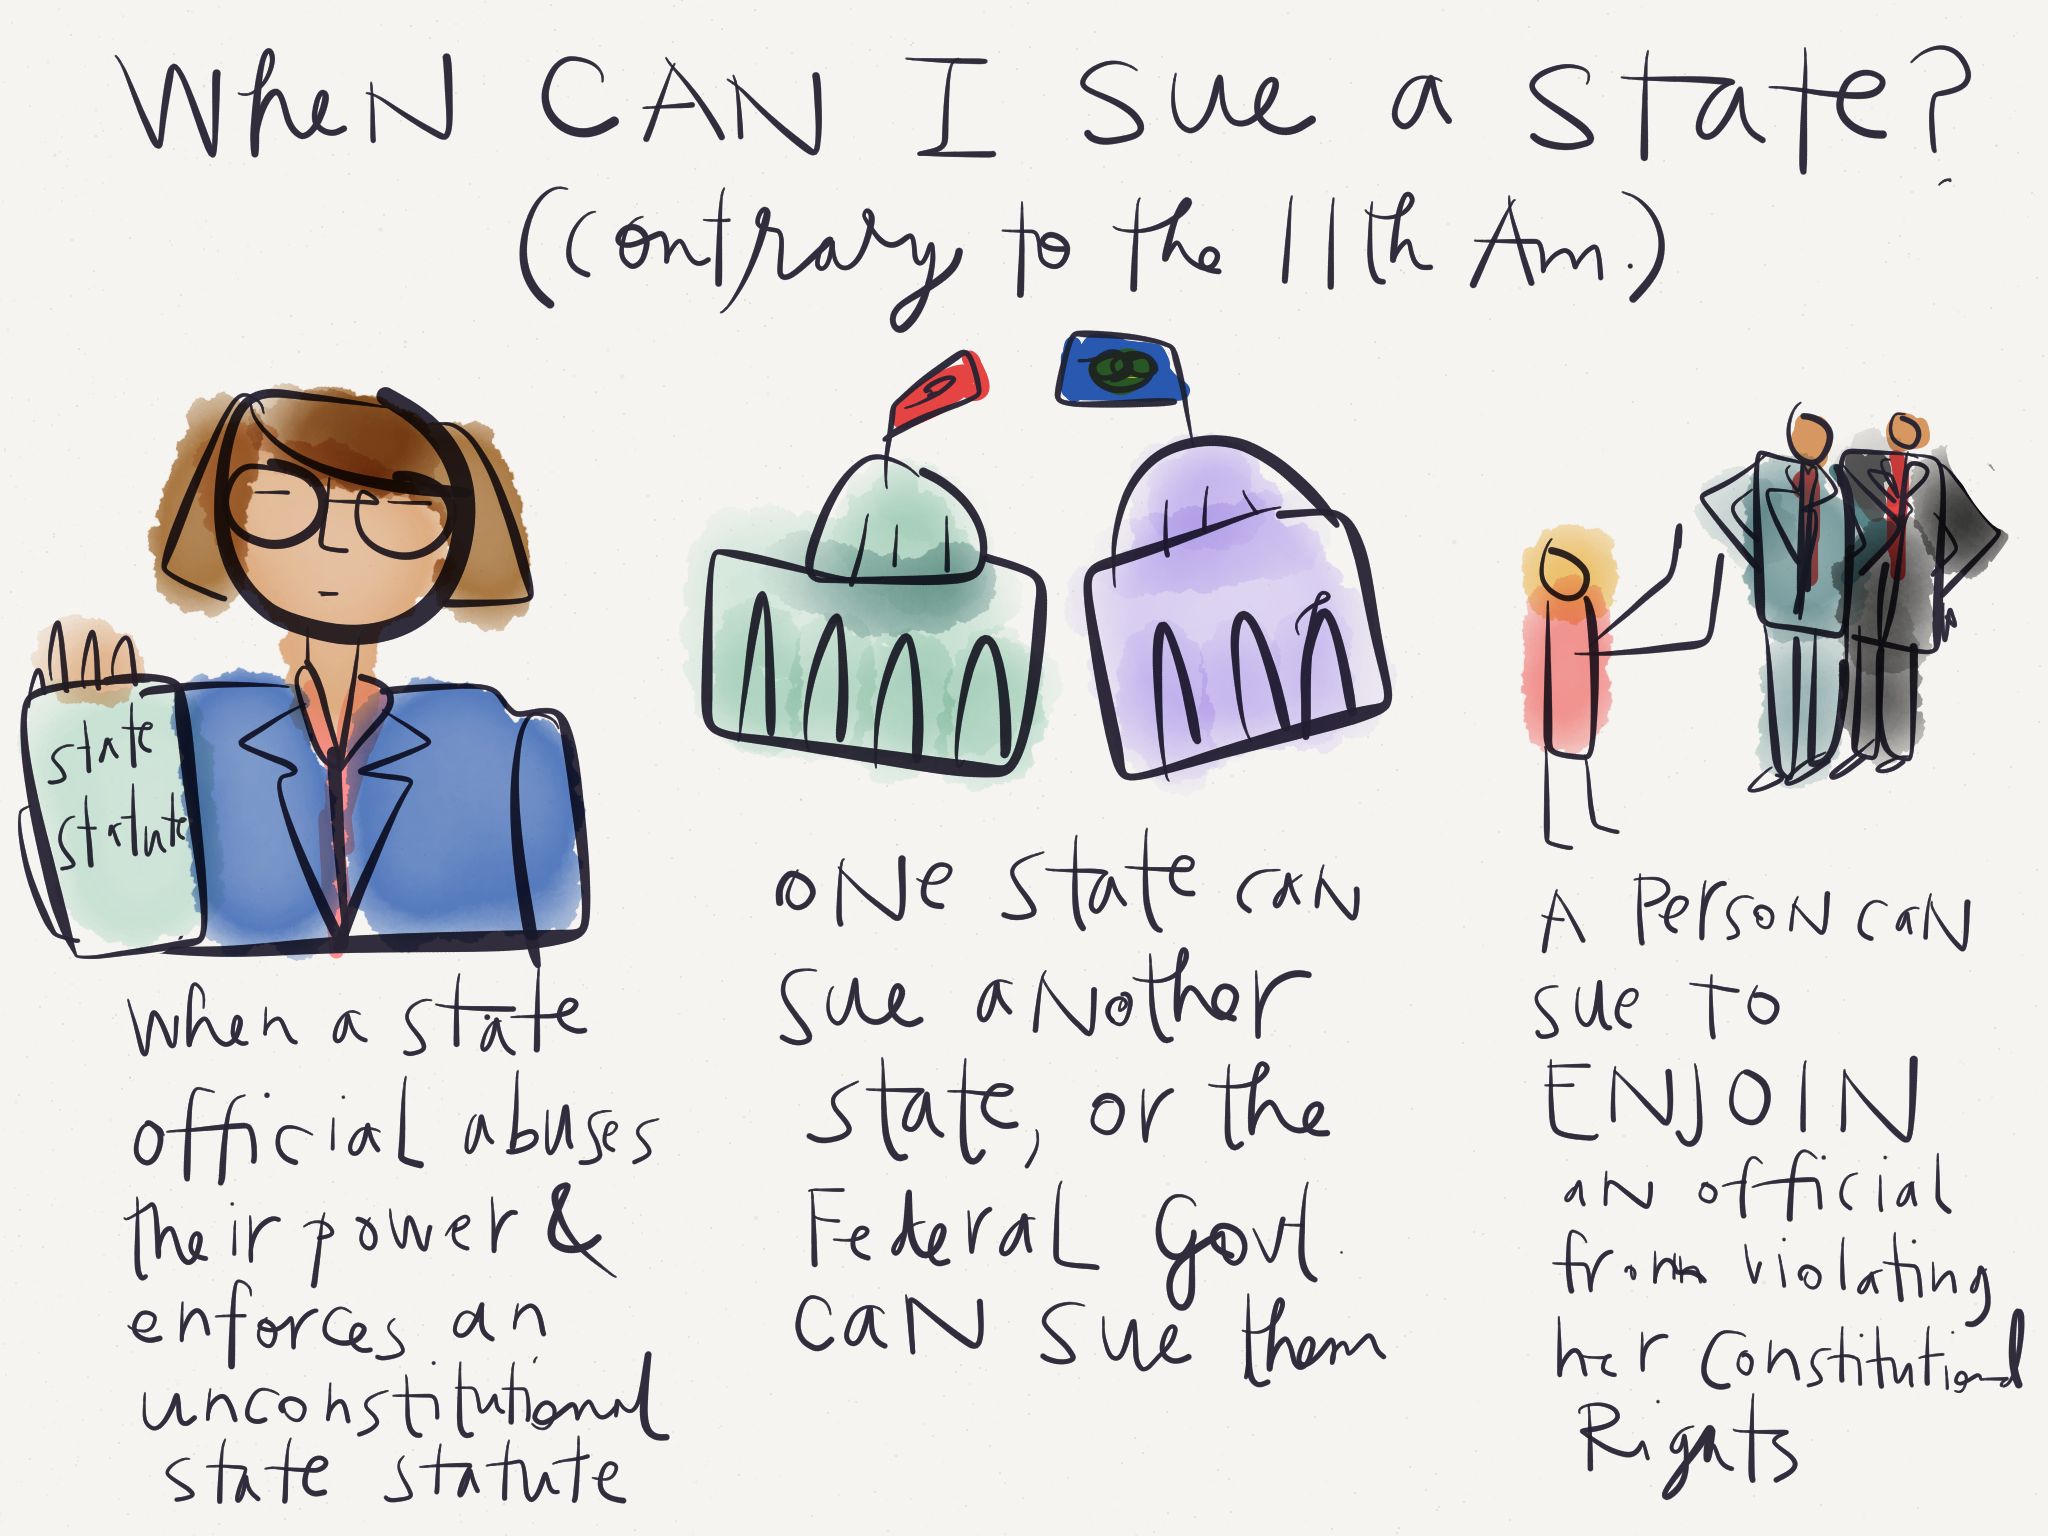 Con Law Visual: When Can I Sue a State?